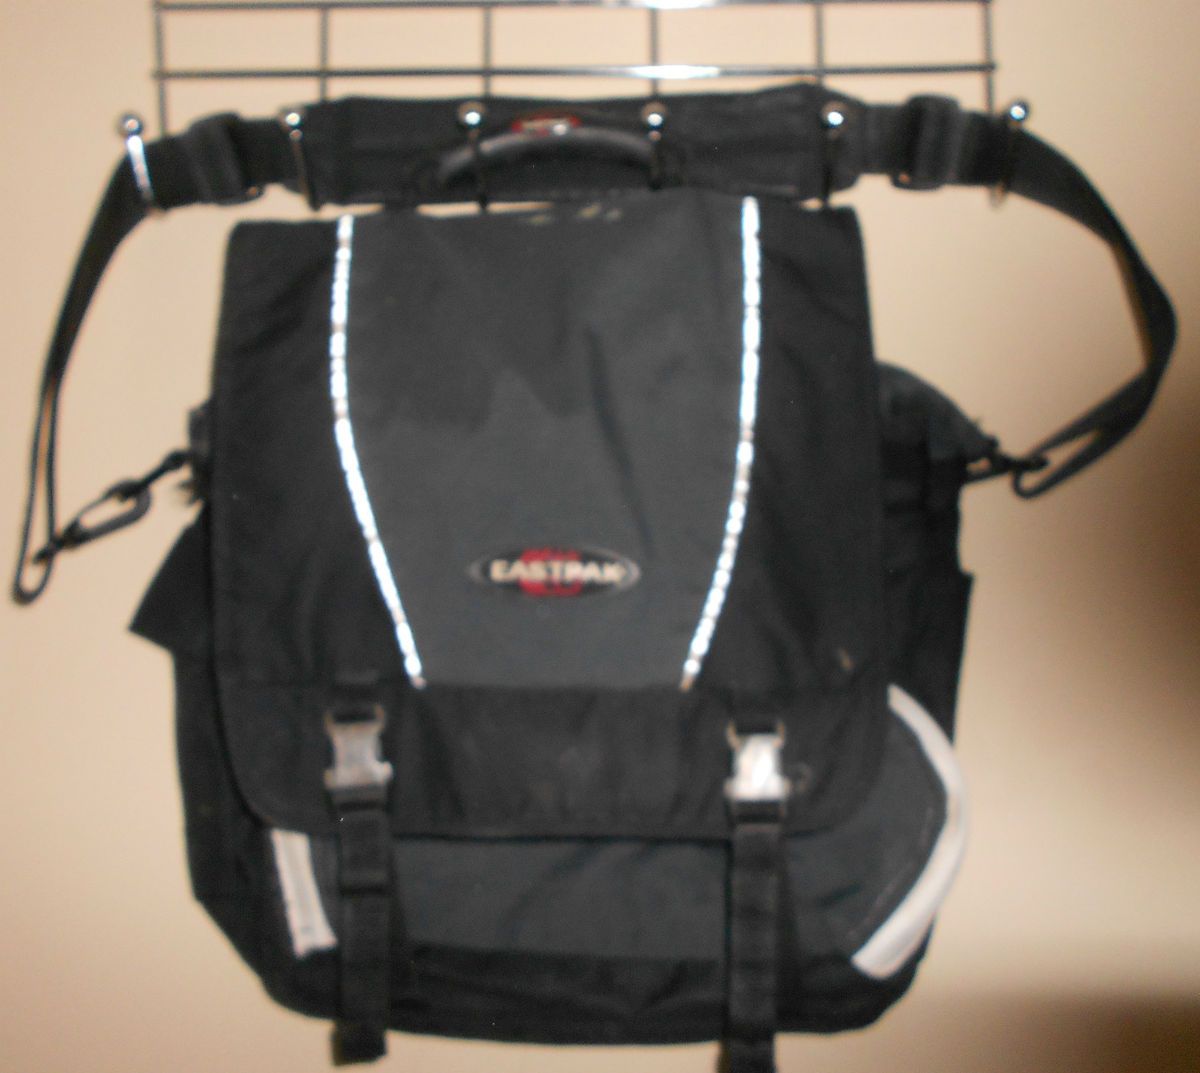 USED* Eastpak Large Messenger Bag Bookbag *Needs Zipper Repair*